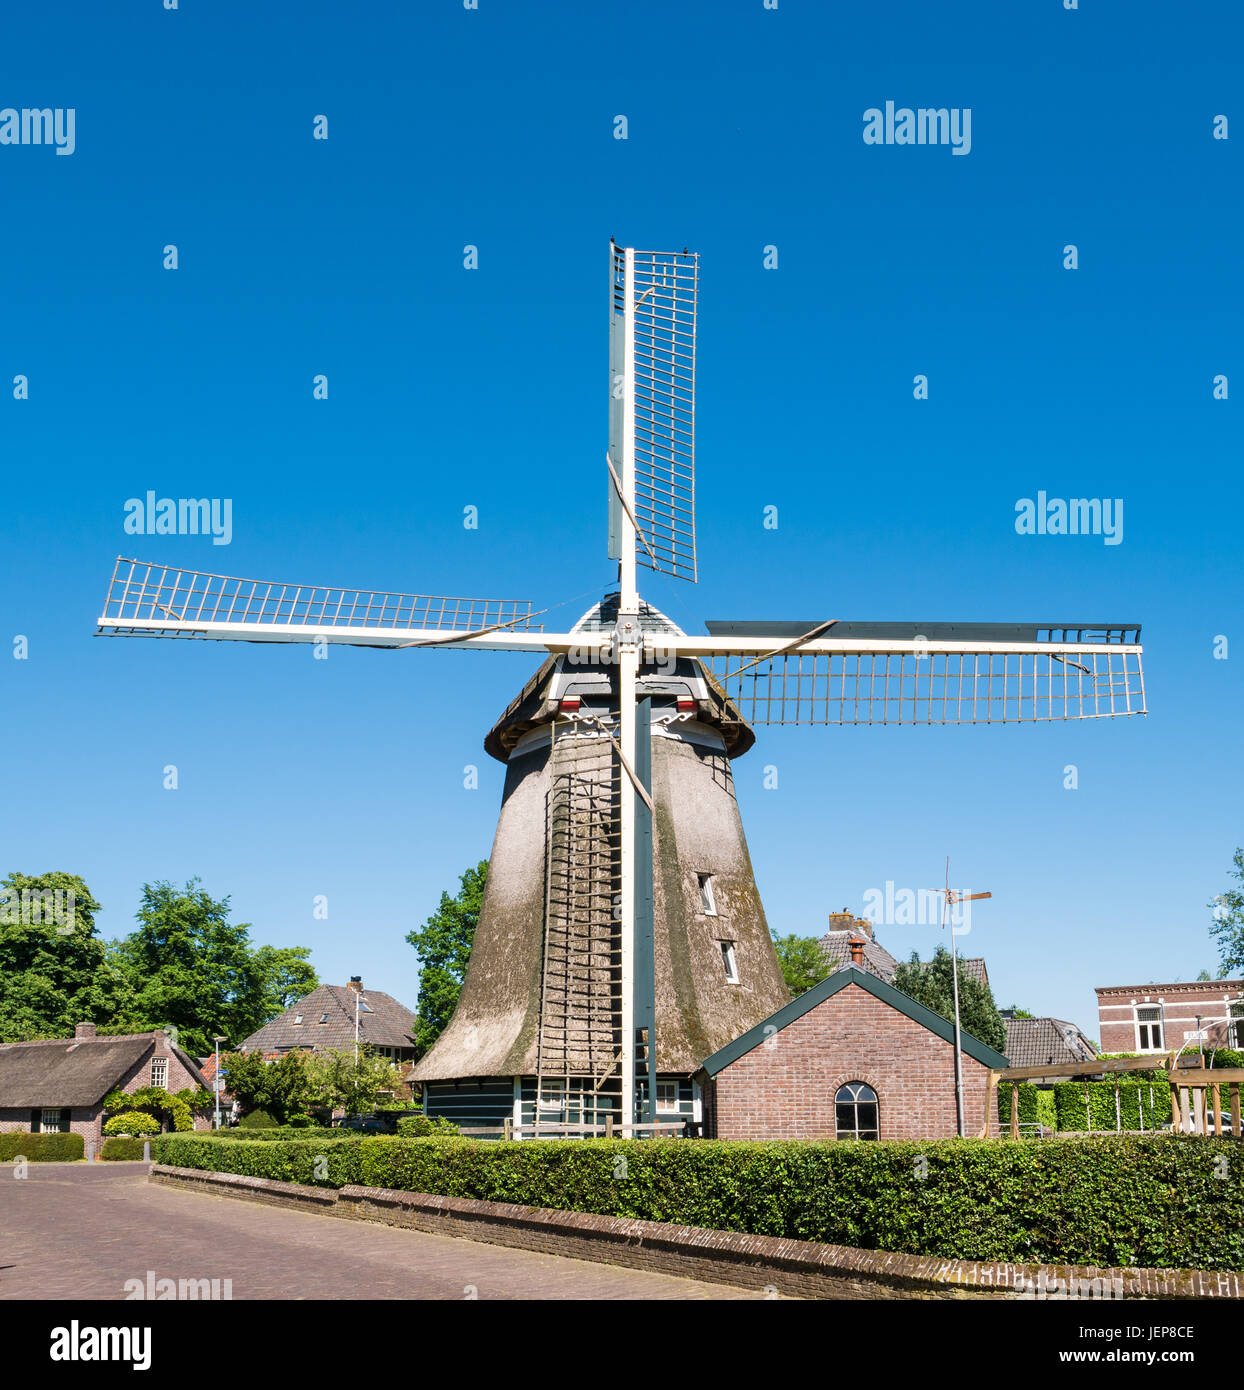 Historische Windmühle in alte Stadt von Laren, Het Gooi, Nordholland, Niederlande Stockfoto